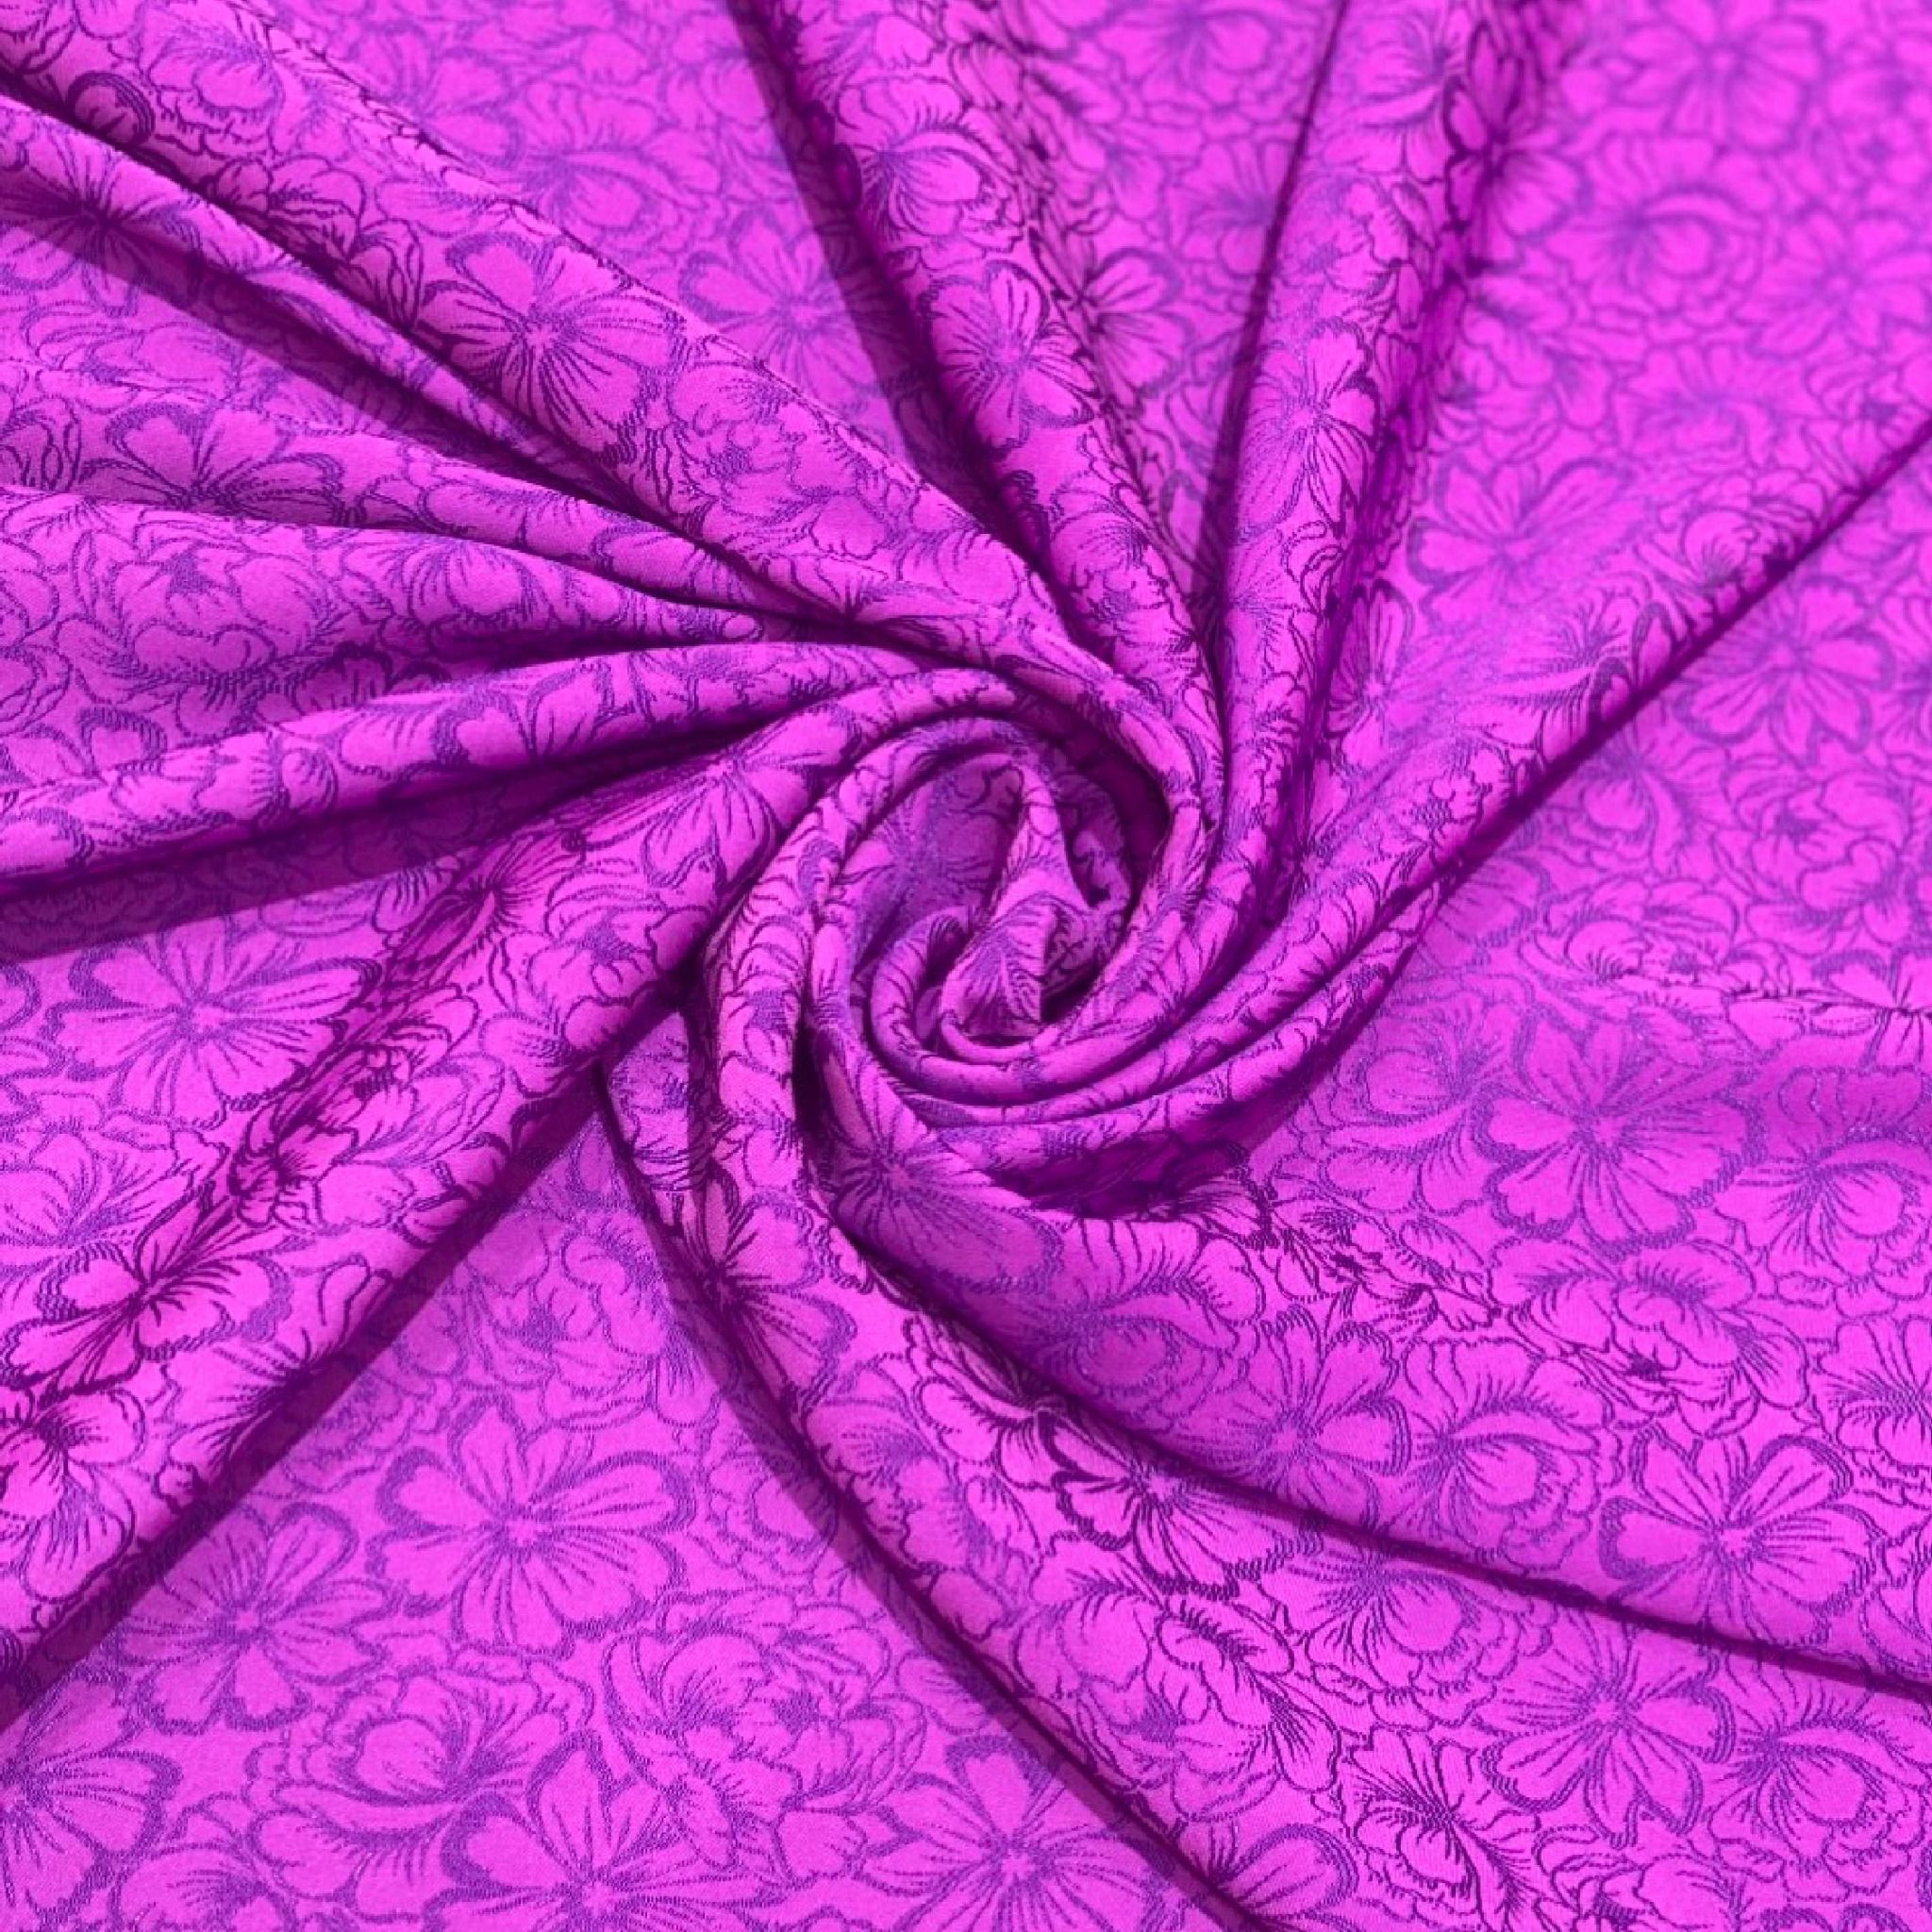 DWUN002014 Vải Gấm Hoa Biển Màu Tím  2m3